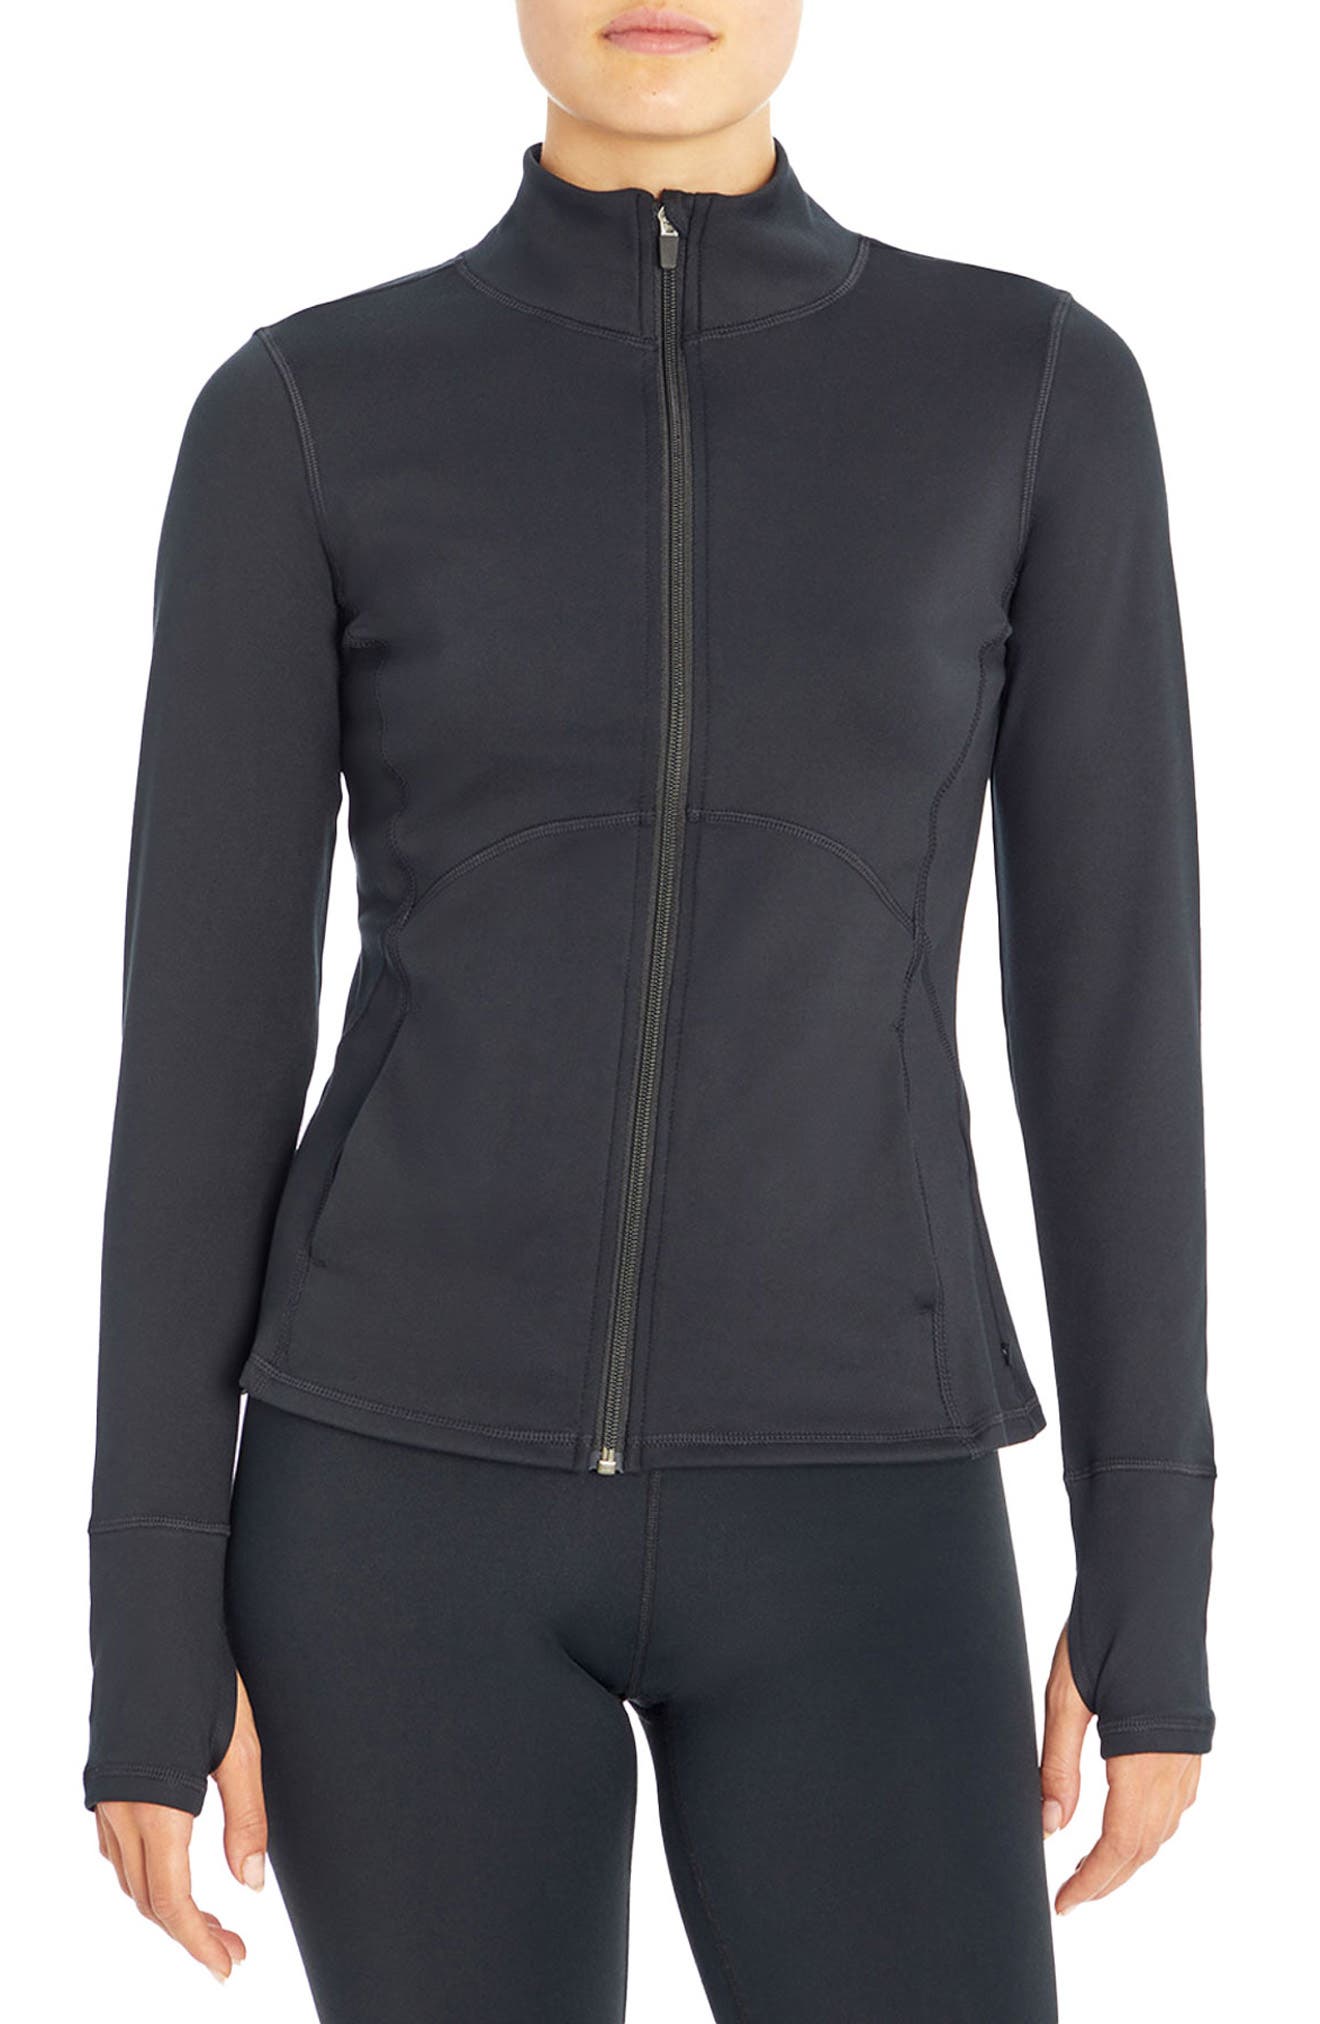 Marika Vanessa Thumbole Cuff Zip Jacket In Black | ModeSens